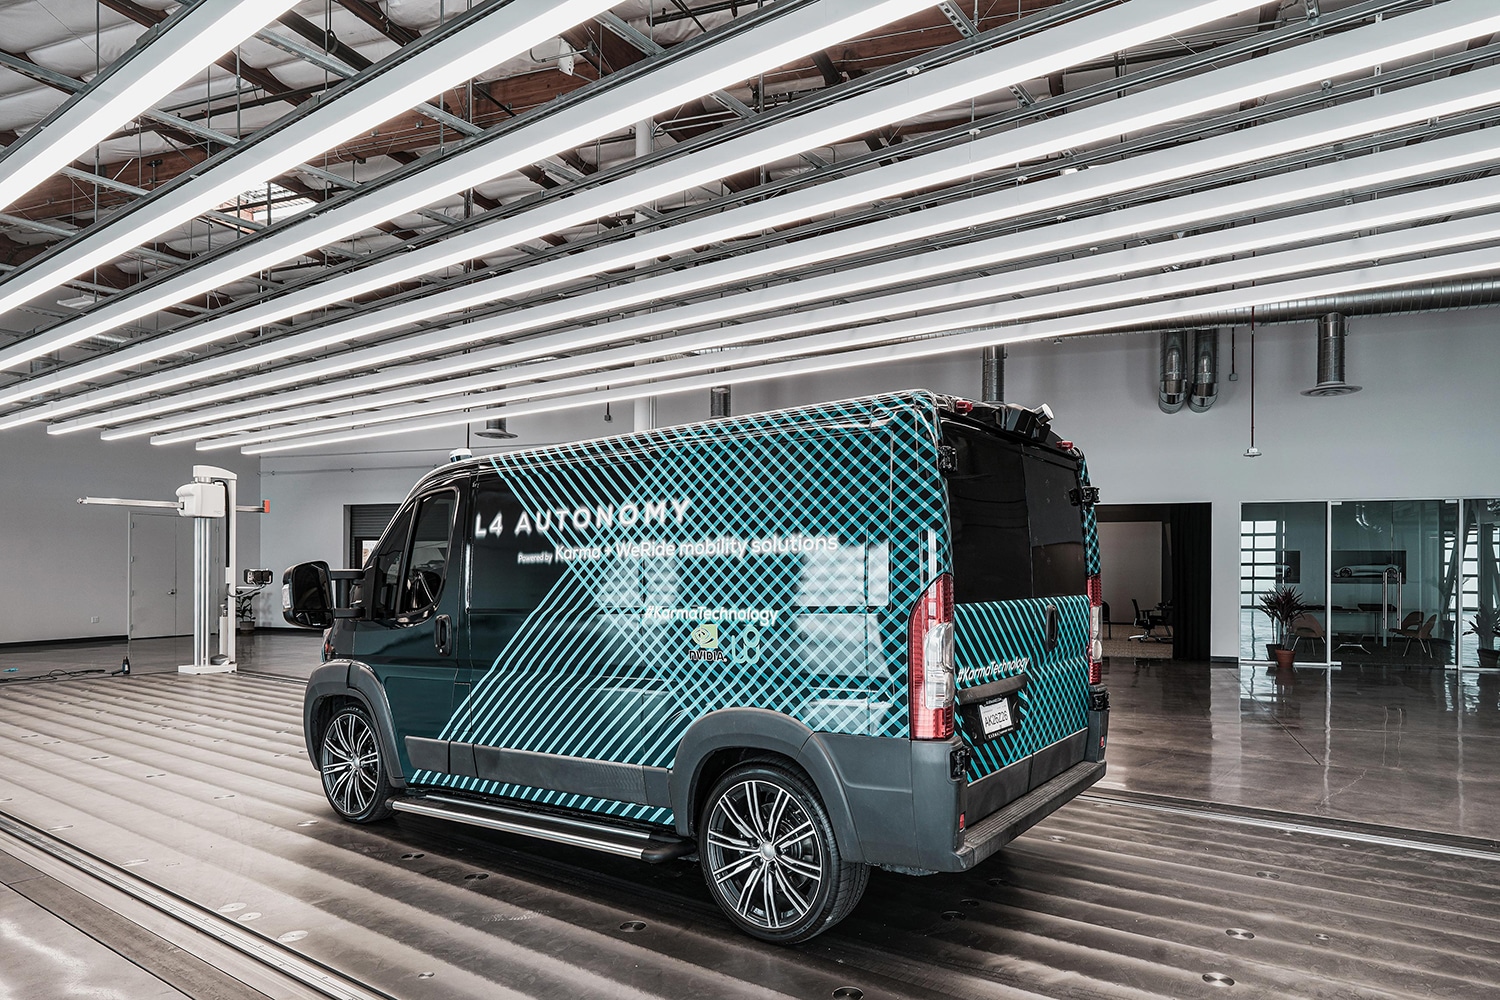 Karma L4 E-Flex, an autonomous electric delivery van.